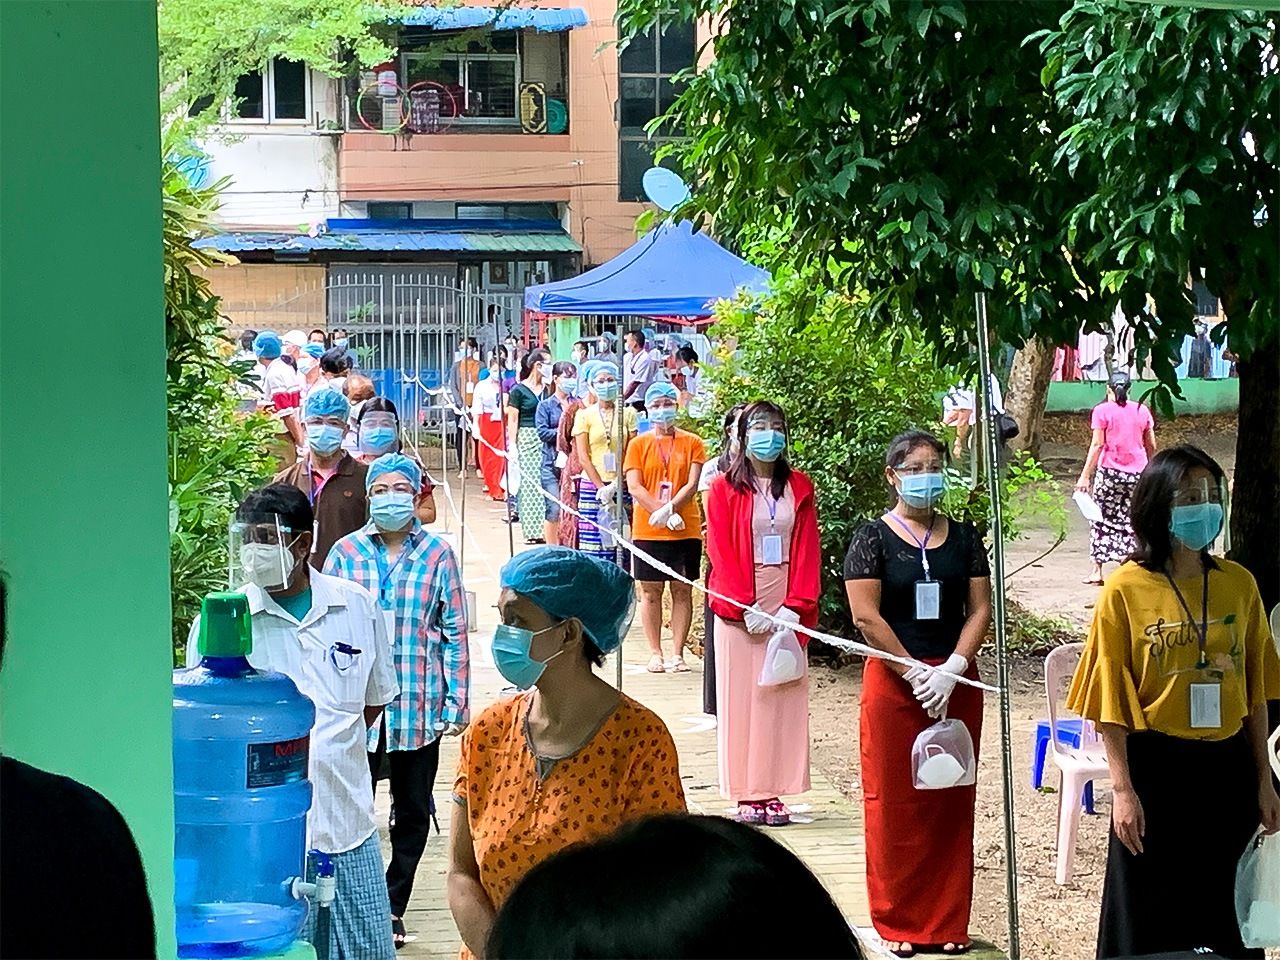 Los votantes se alinean temprano en la mañana de manera ordenada como medida de prevención ante el nuevo coronavirus. (Fotografía cortesía de la Fundación Nippon)